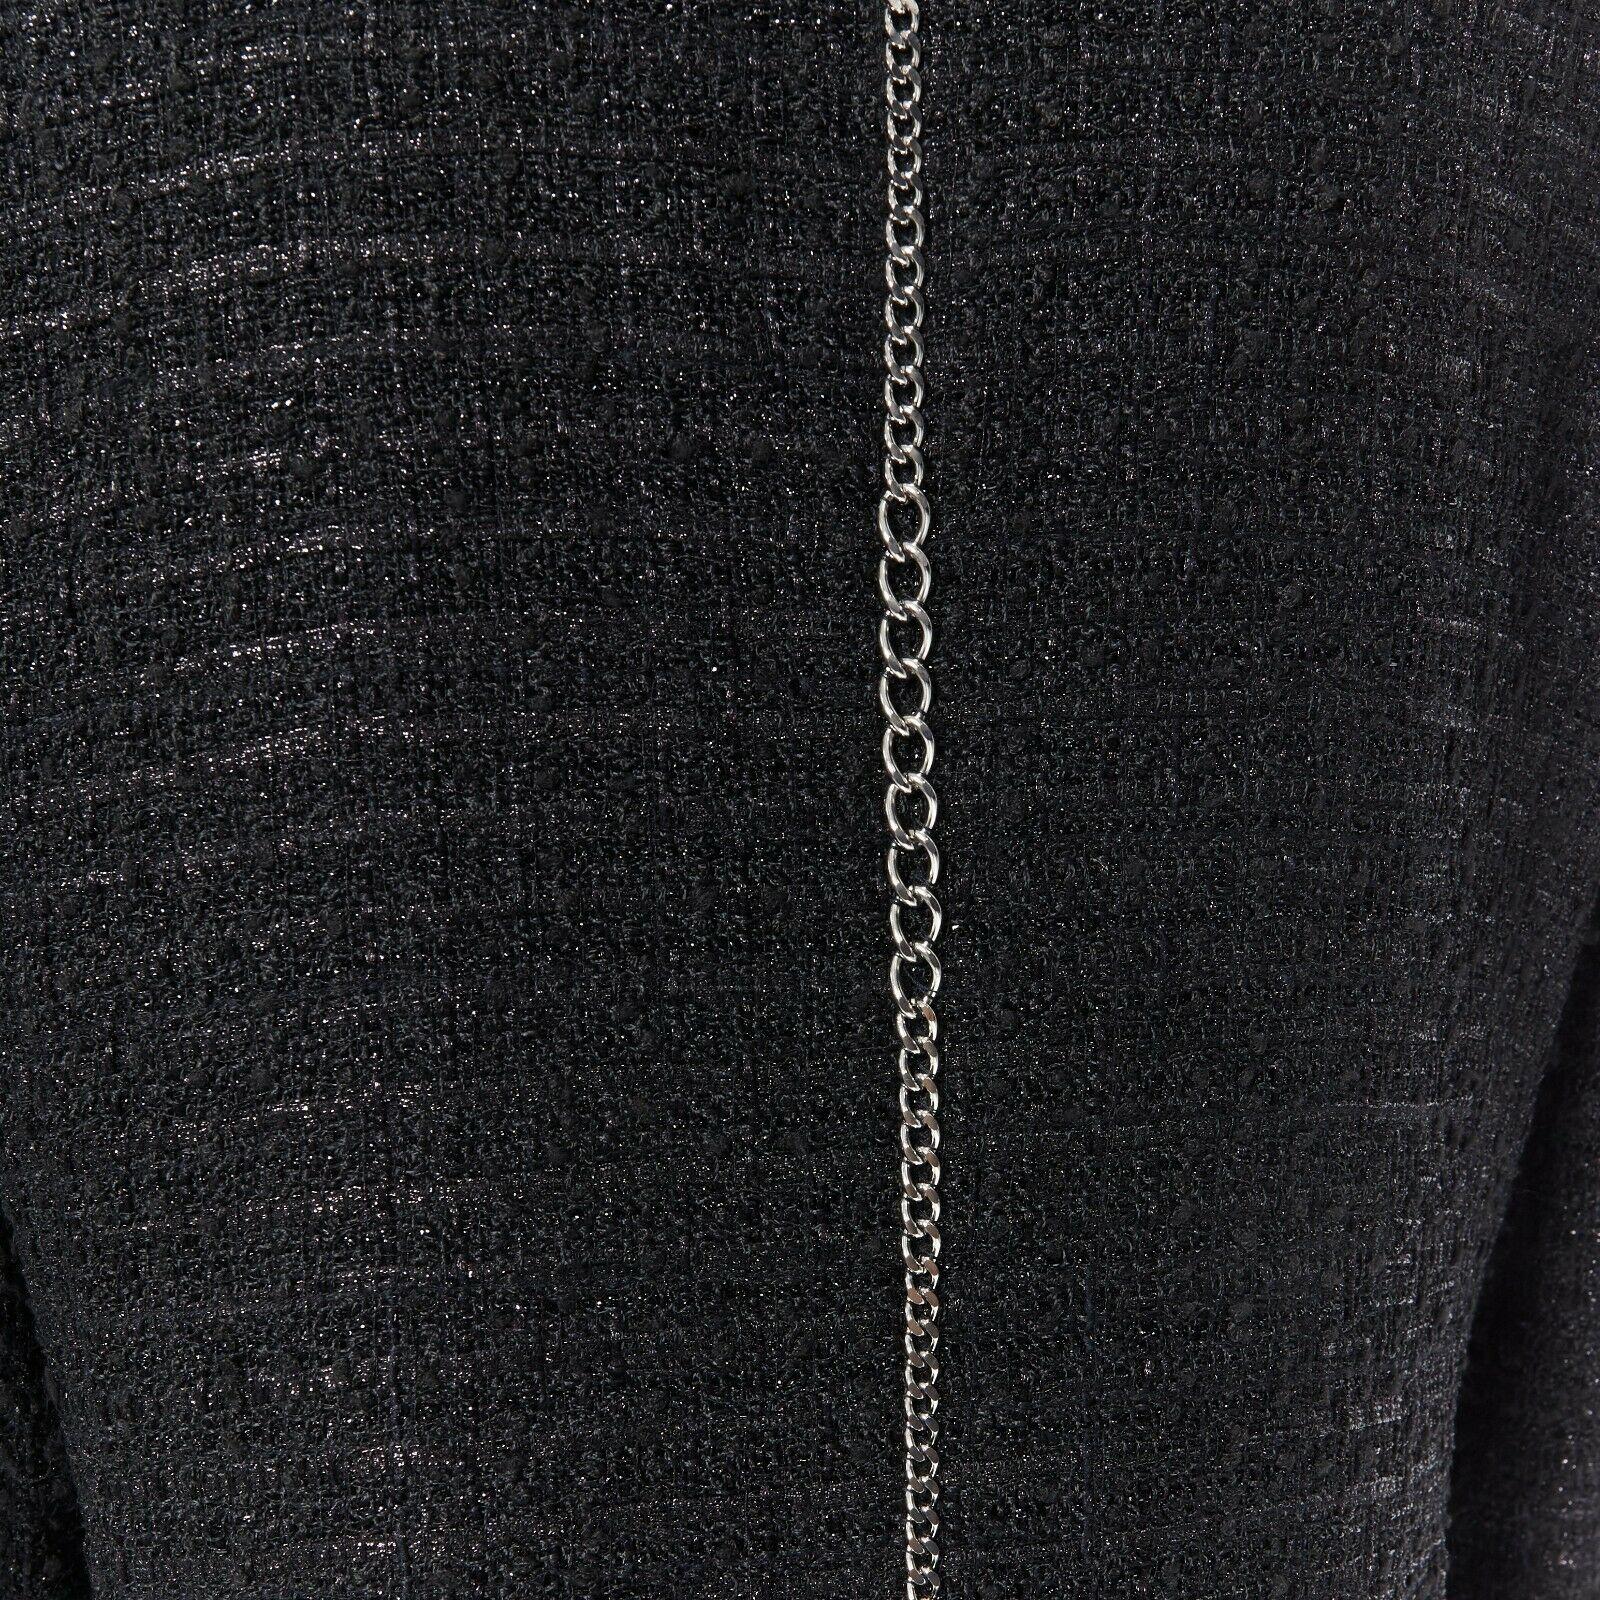 CHANEL MEN 06P schwarz Fantasie Tweed Lurex Silber Kette trimmen Abendessen Jacke FR46 M 5